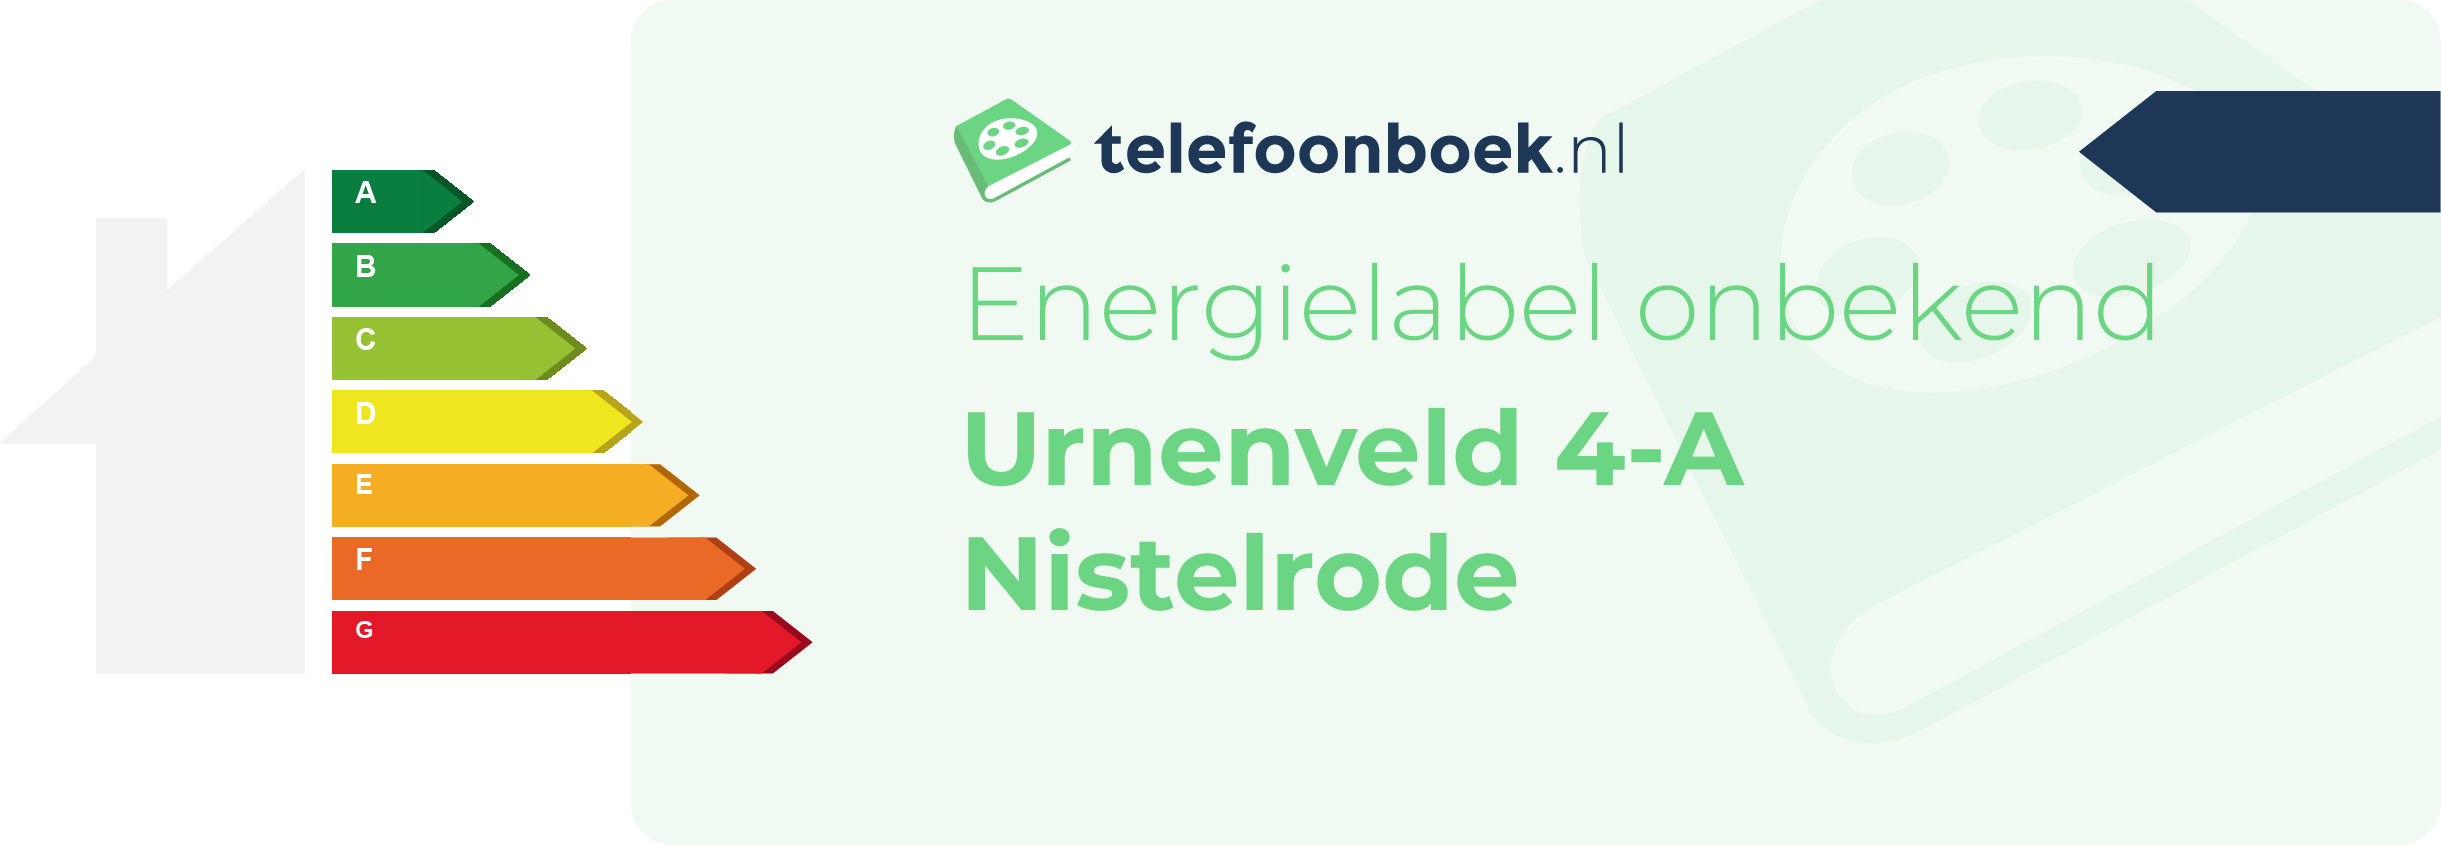 Energielabel Urnenveld 4-A Nistelrode